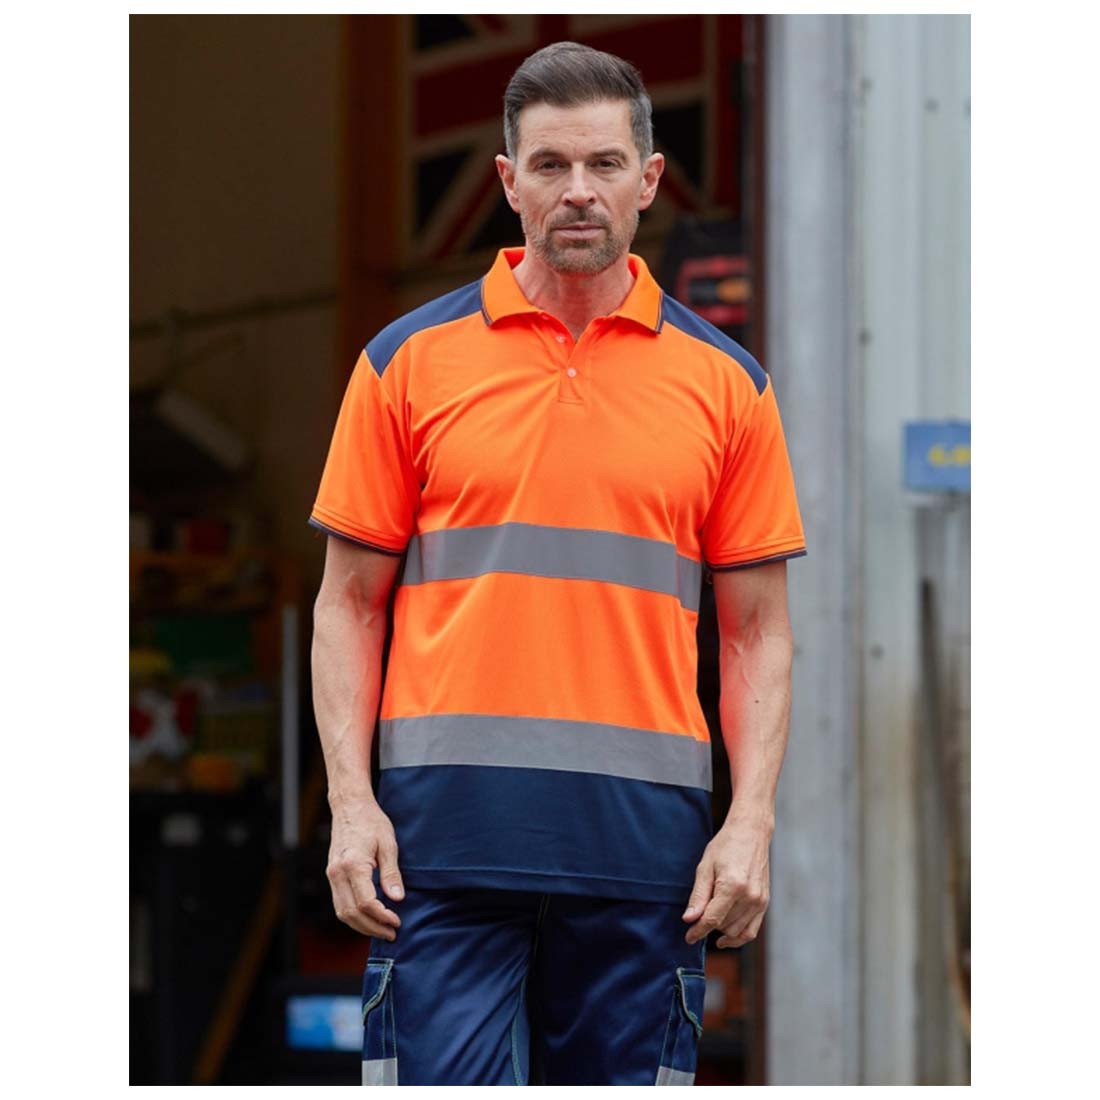 Zweifarbiges reflektierendes Polo-T-Shirt - Arbeitskleidung